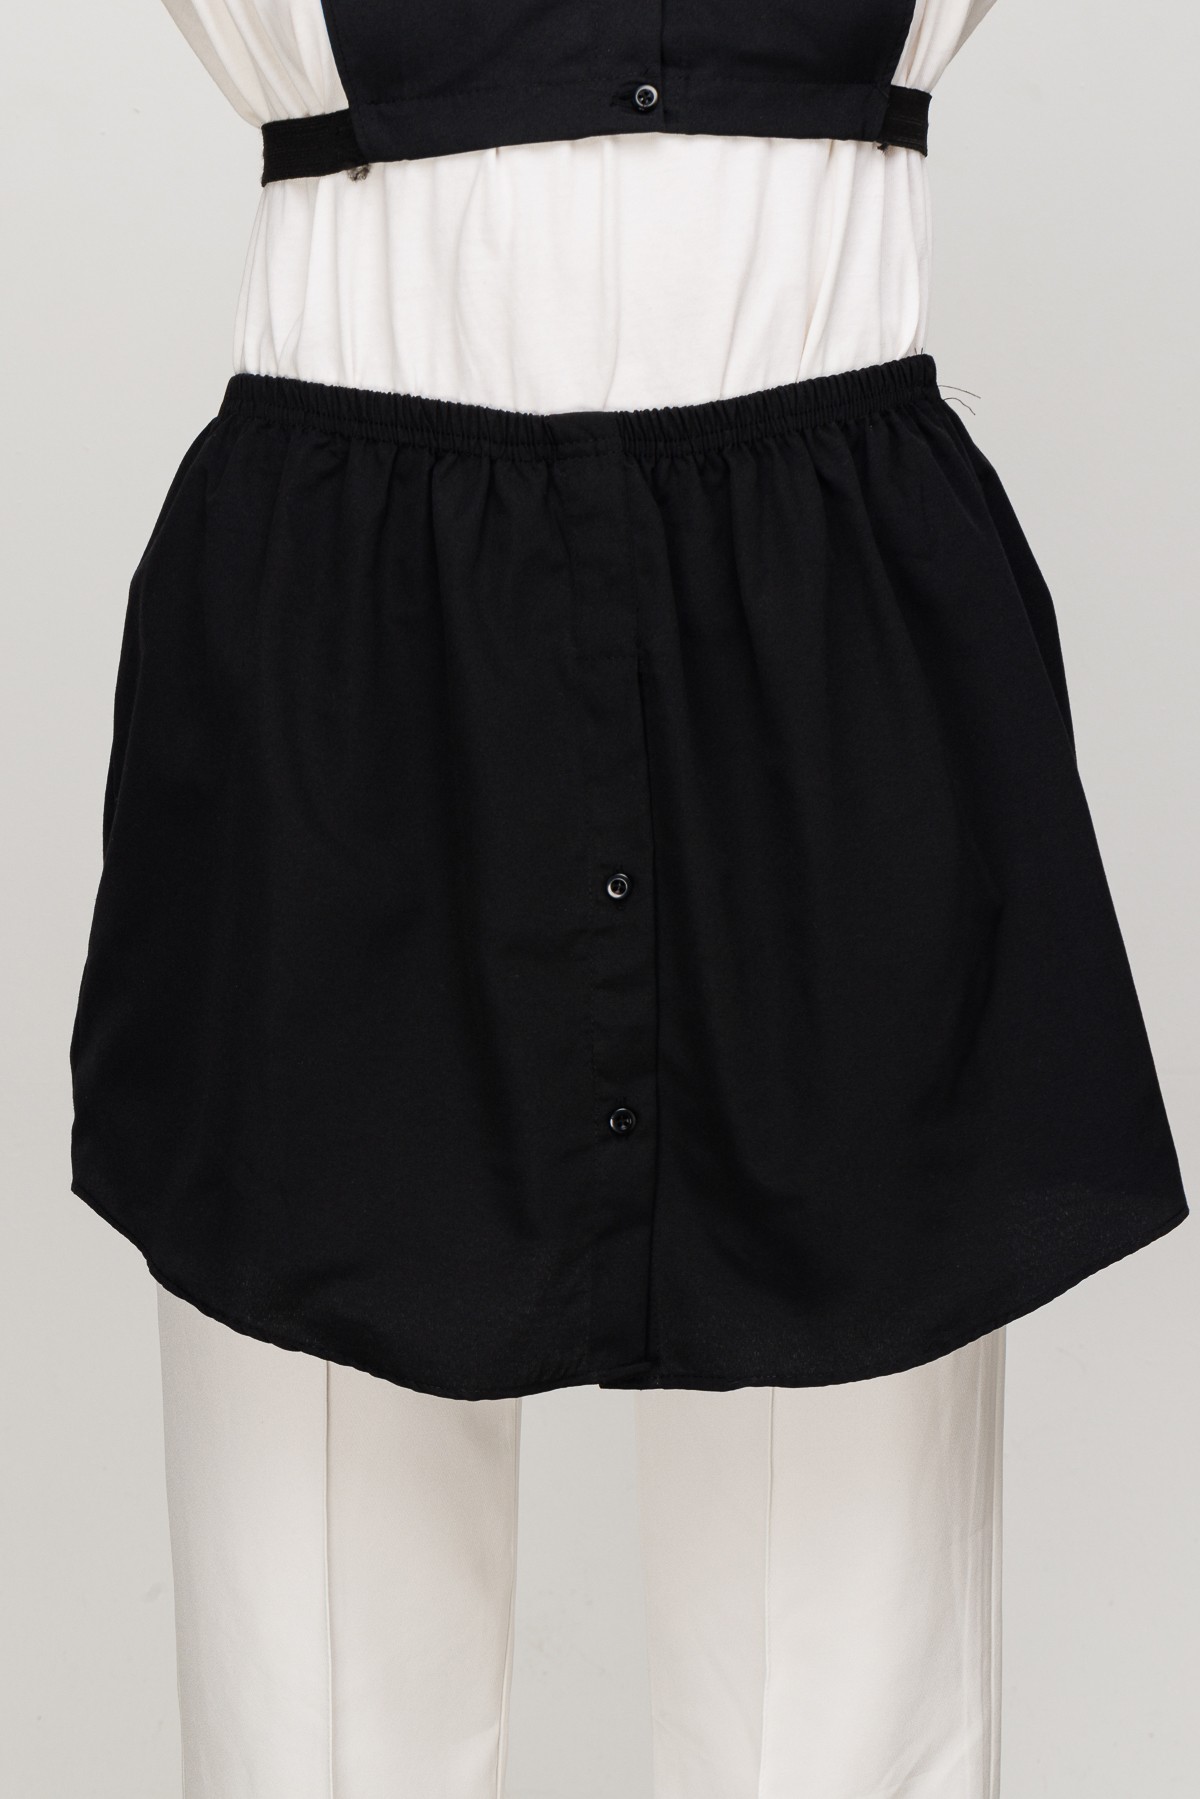 Shirt Skirt